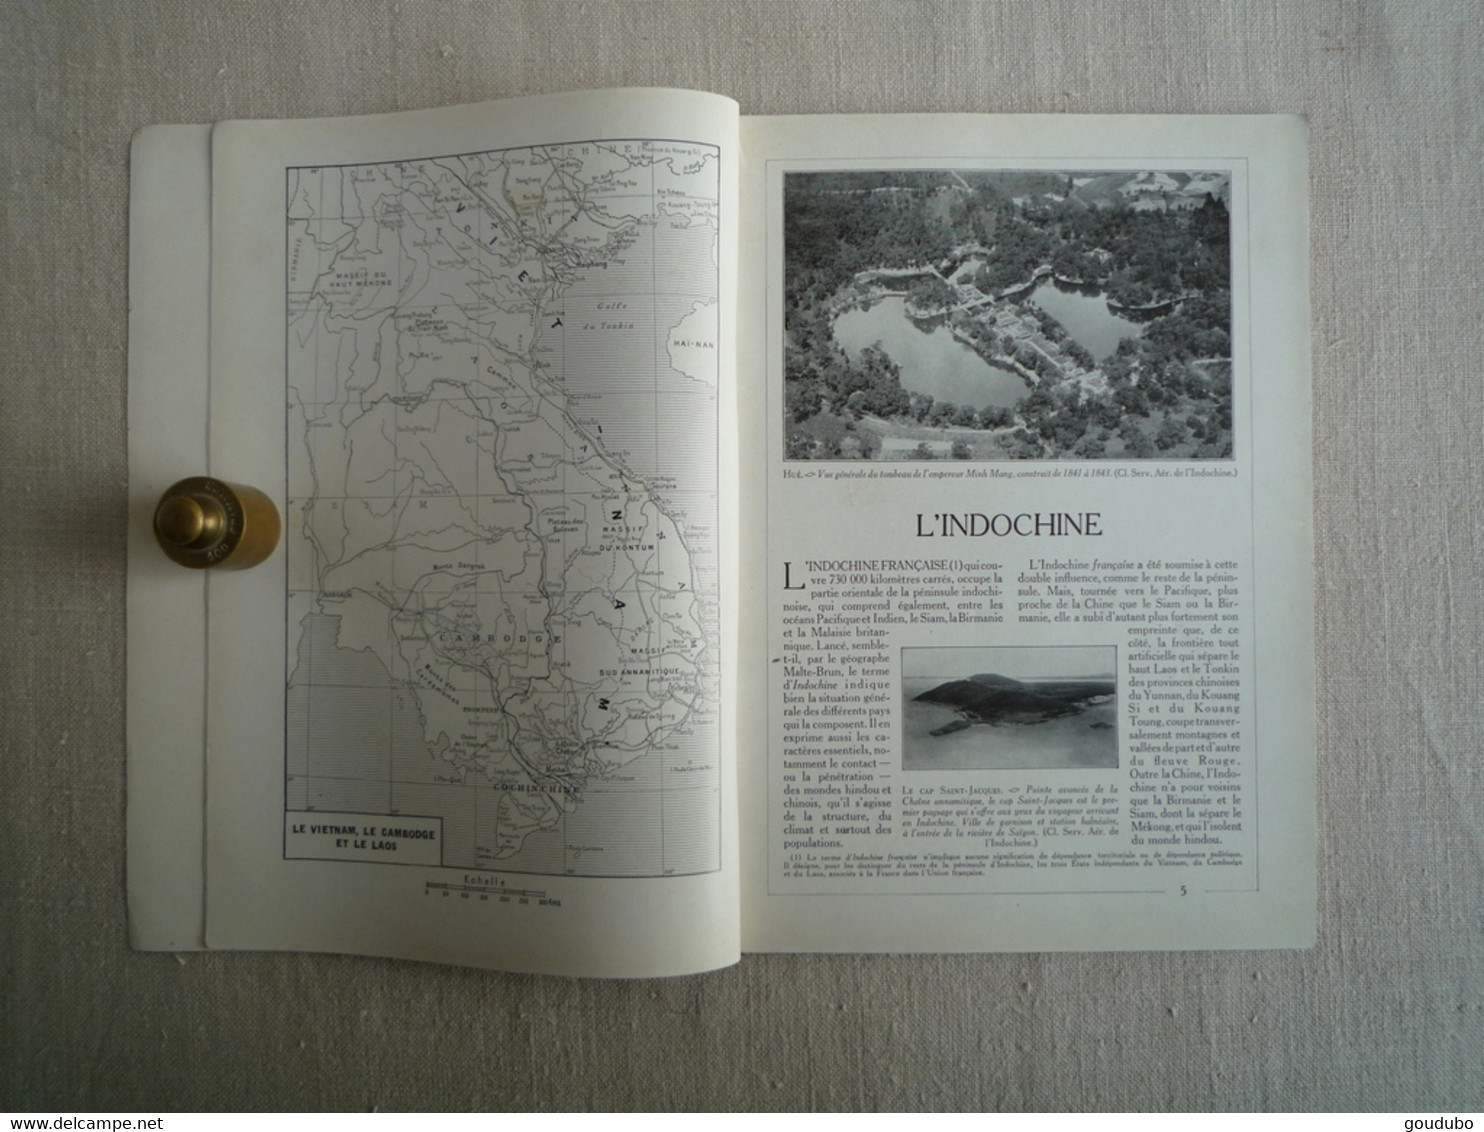 Encyclopédie Par L'image Indochine Histoire Géographie Population Hachette 1951 - Encyclopedieën